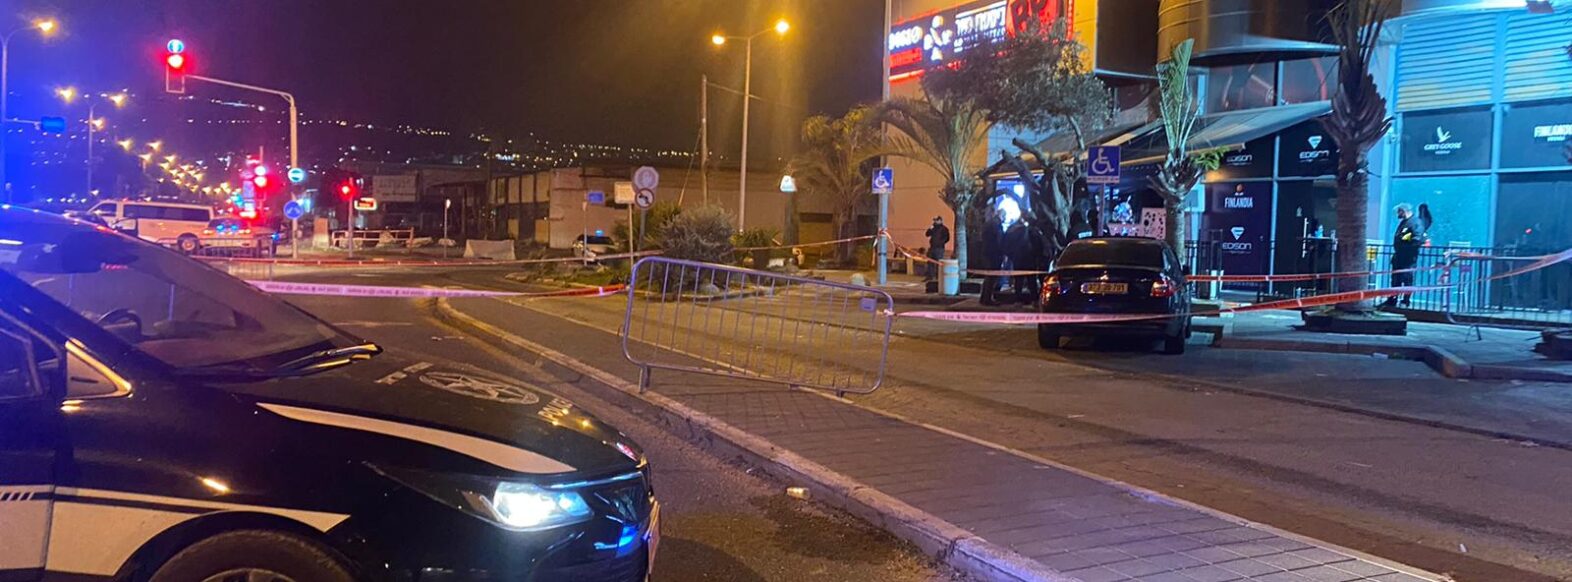 המשטרה פענחה ארוע ירי לעבר מועדון בהסתדרות בחיפה. הצהרת תובע הוגשה נגד החשוד במעשה